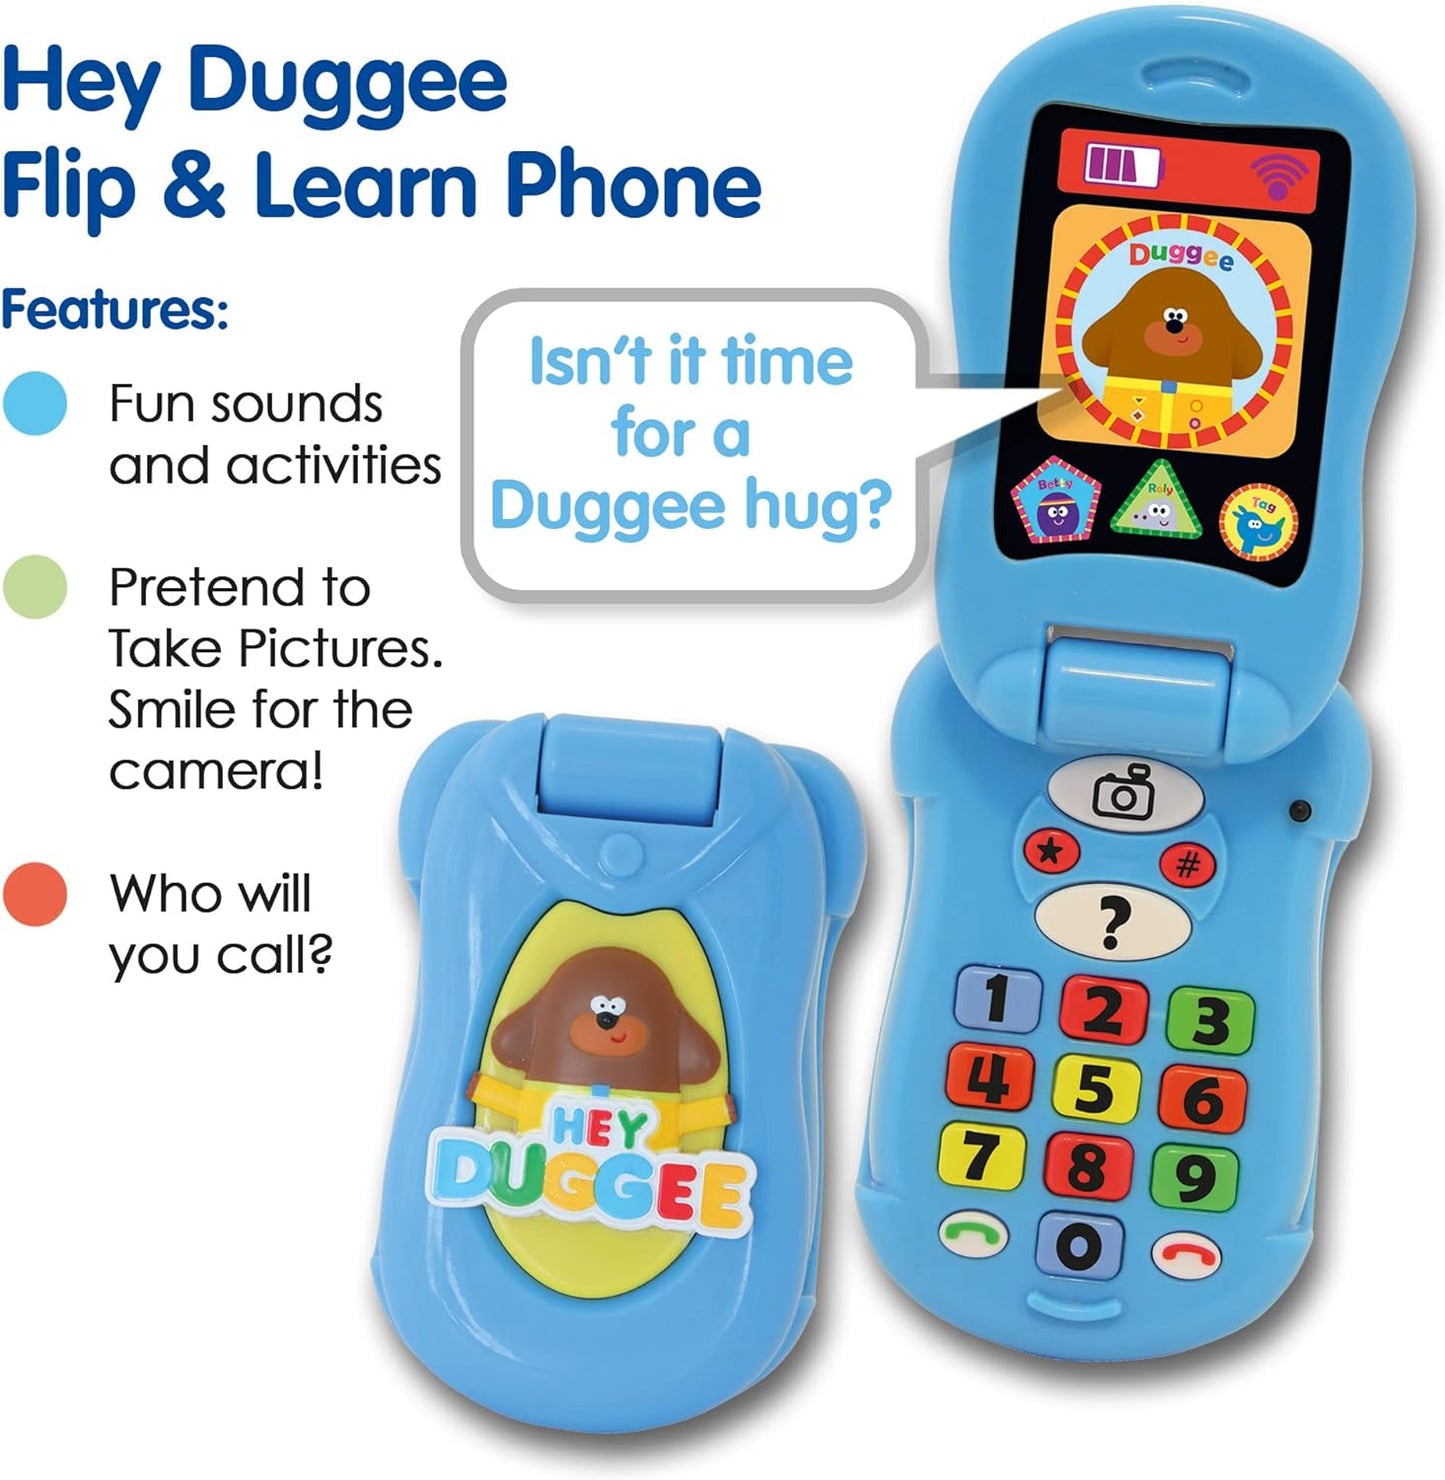 Hey Duggee Toys, Flip & Learn Toy Phone For Kids - Ajuda no desenvolvimento infantil, aprendizagem, resolução de problemas, comunicação, coordenação olho-mão e habilidades motoras, 18 meses ou mais, azul